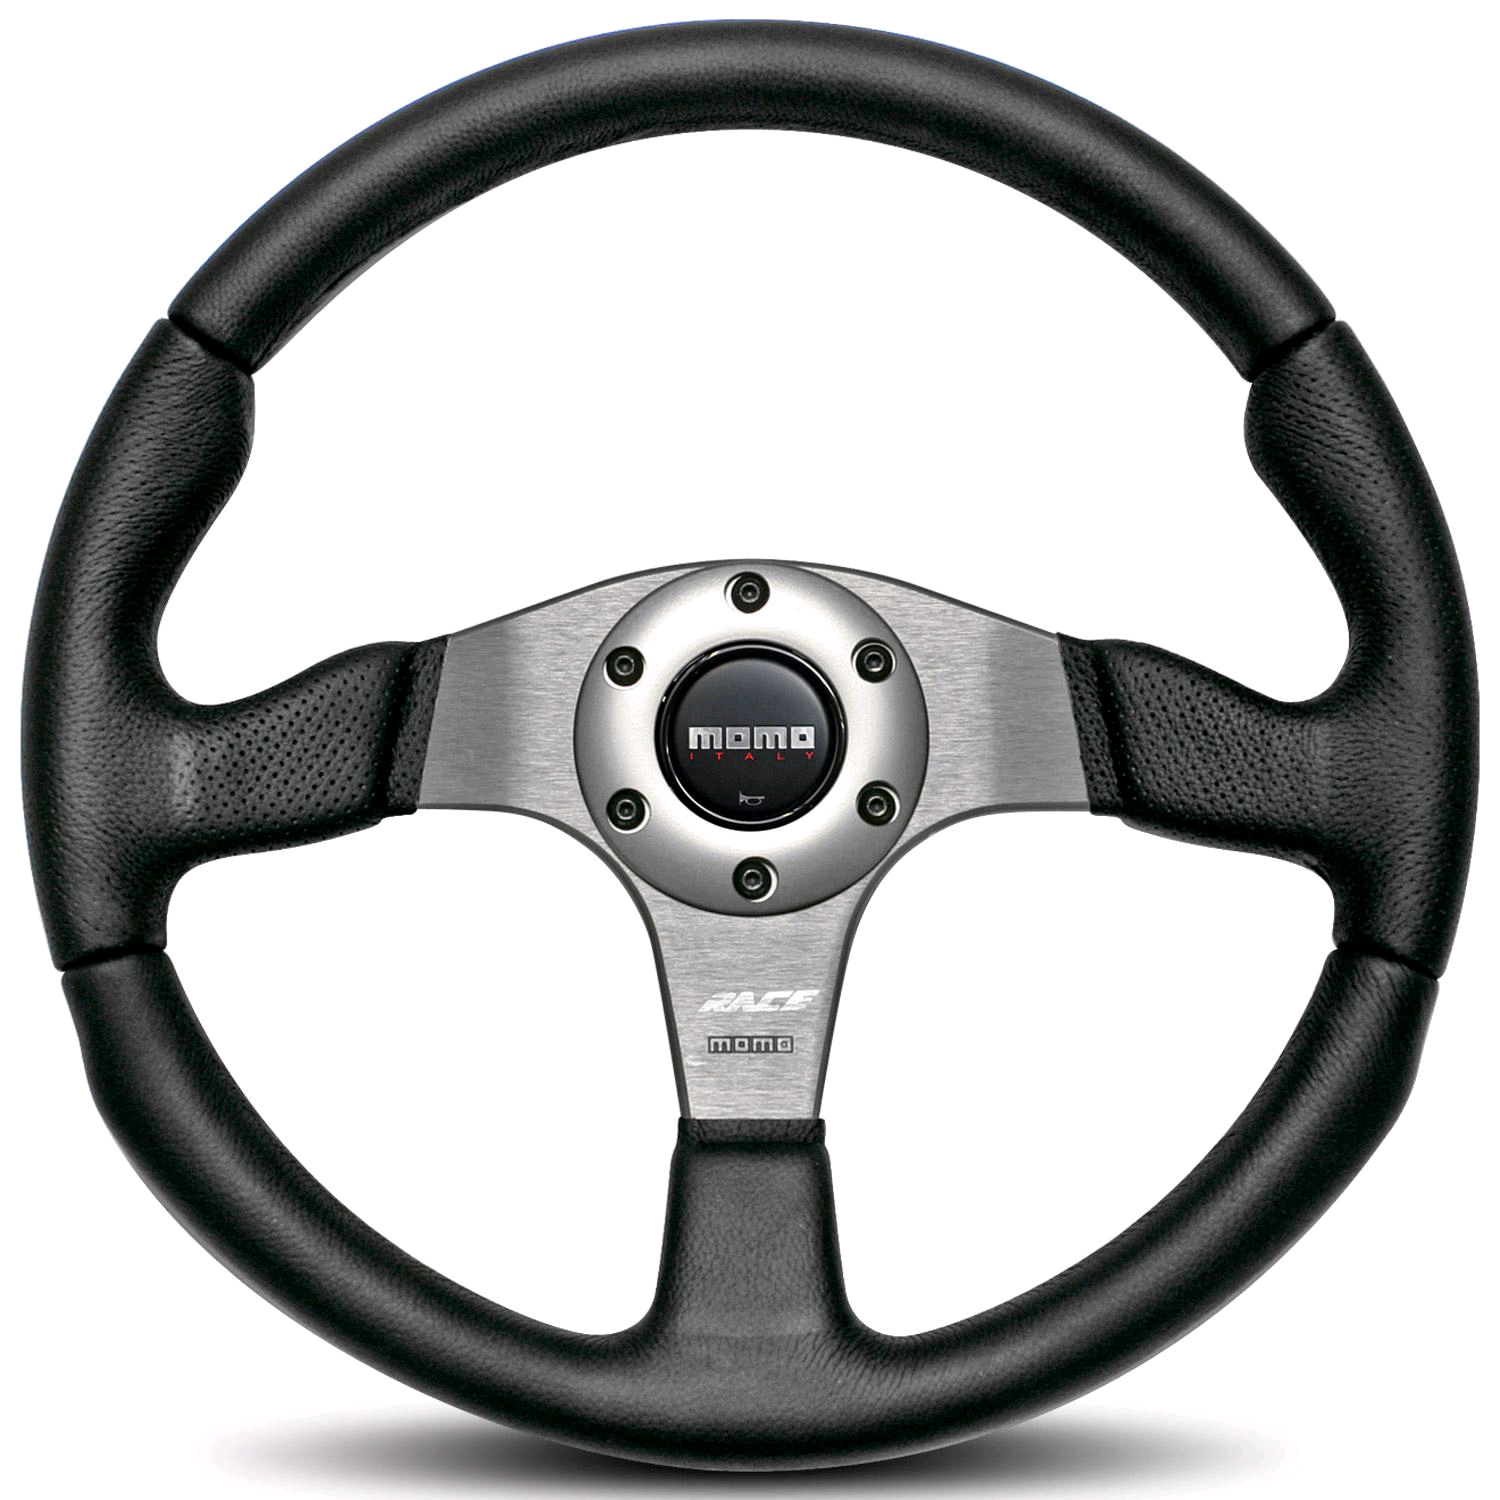 Steeringwheel HD PNG - 89316